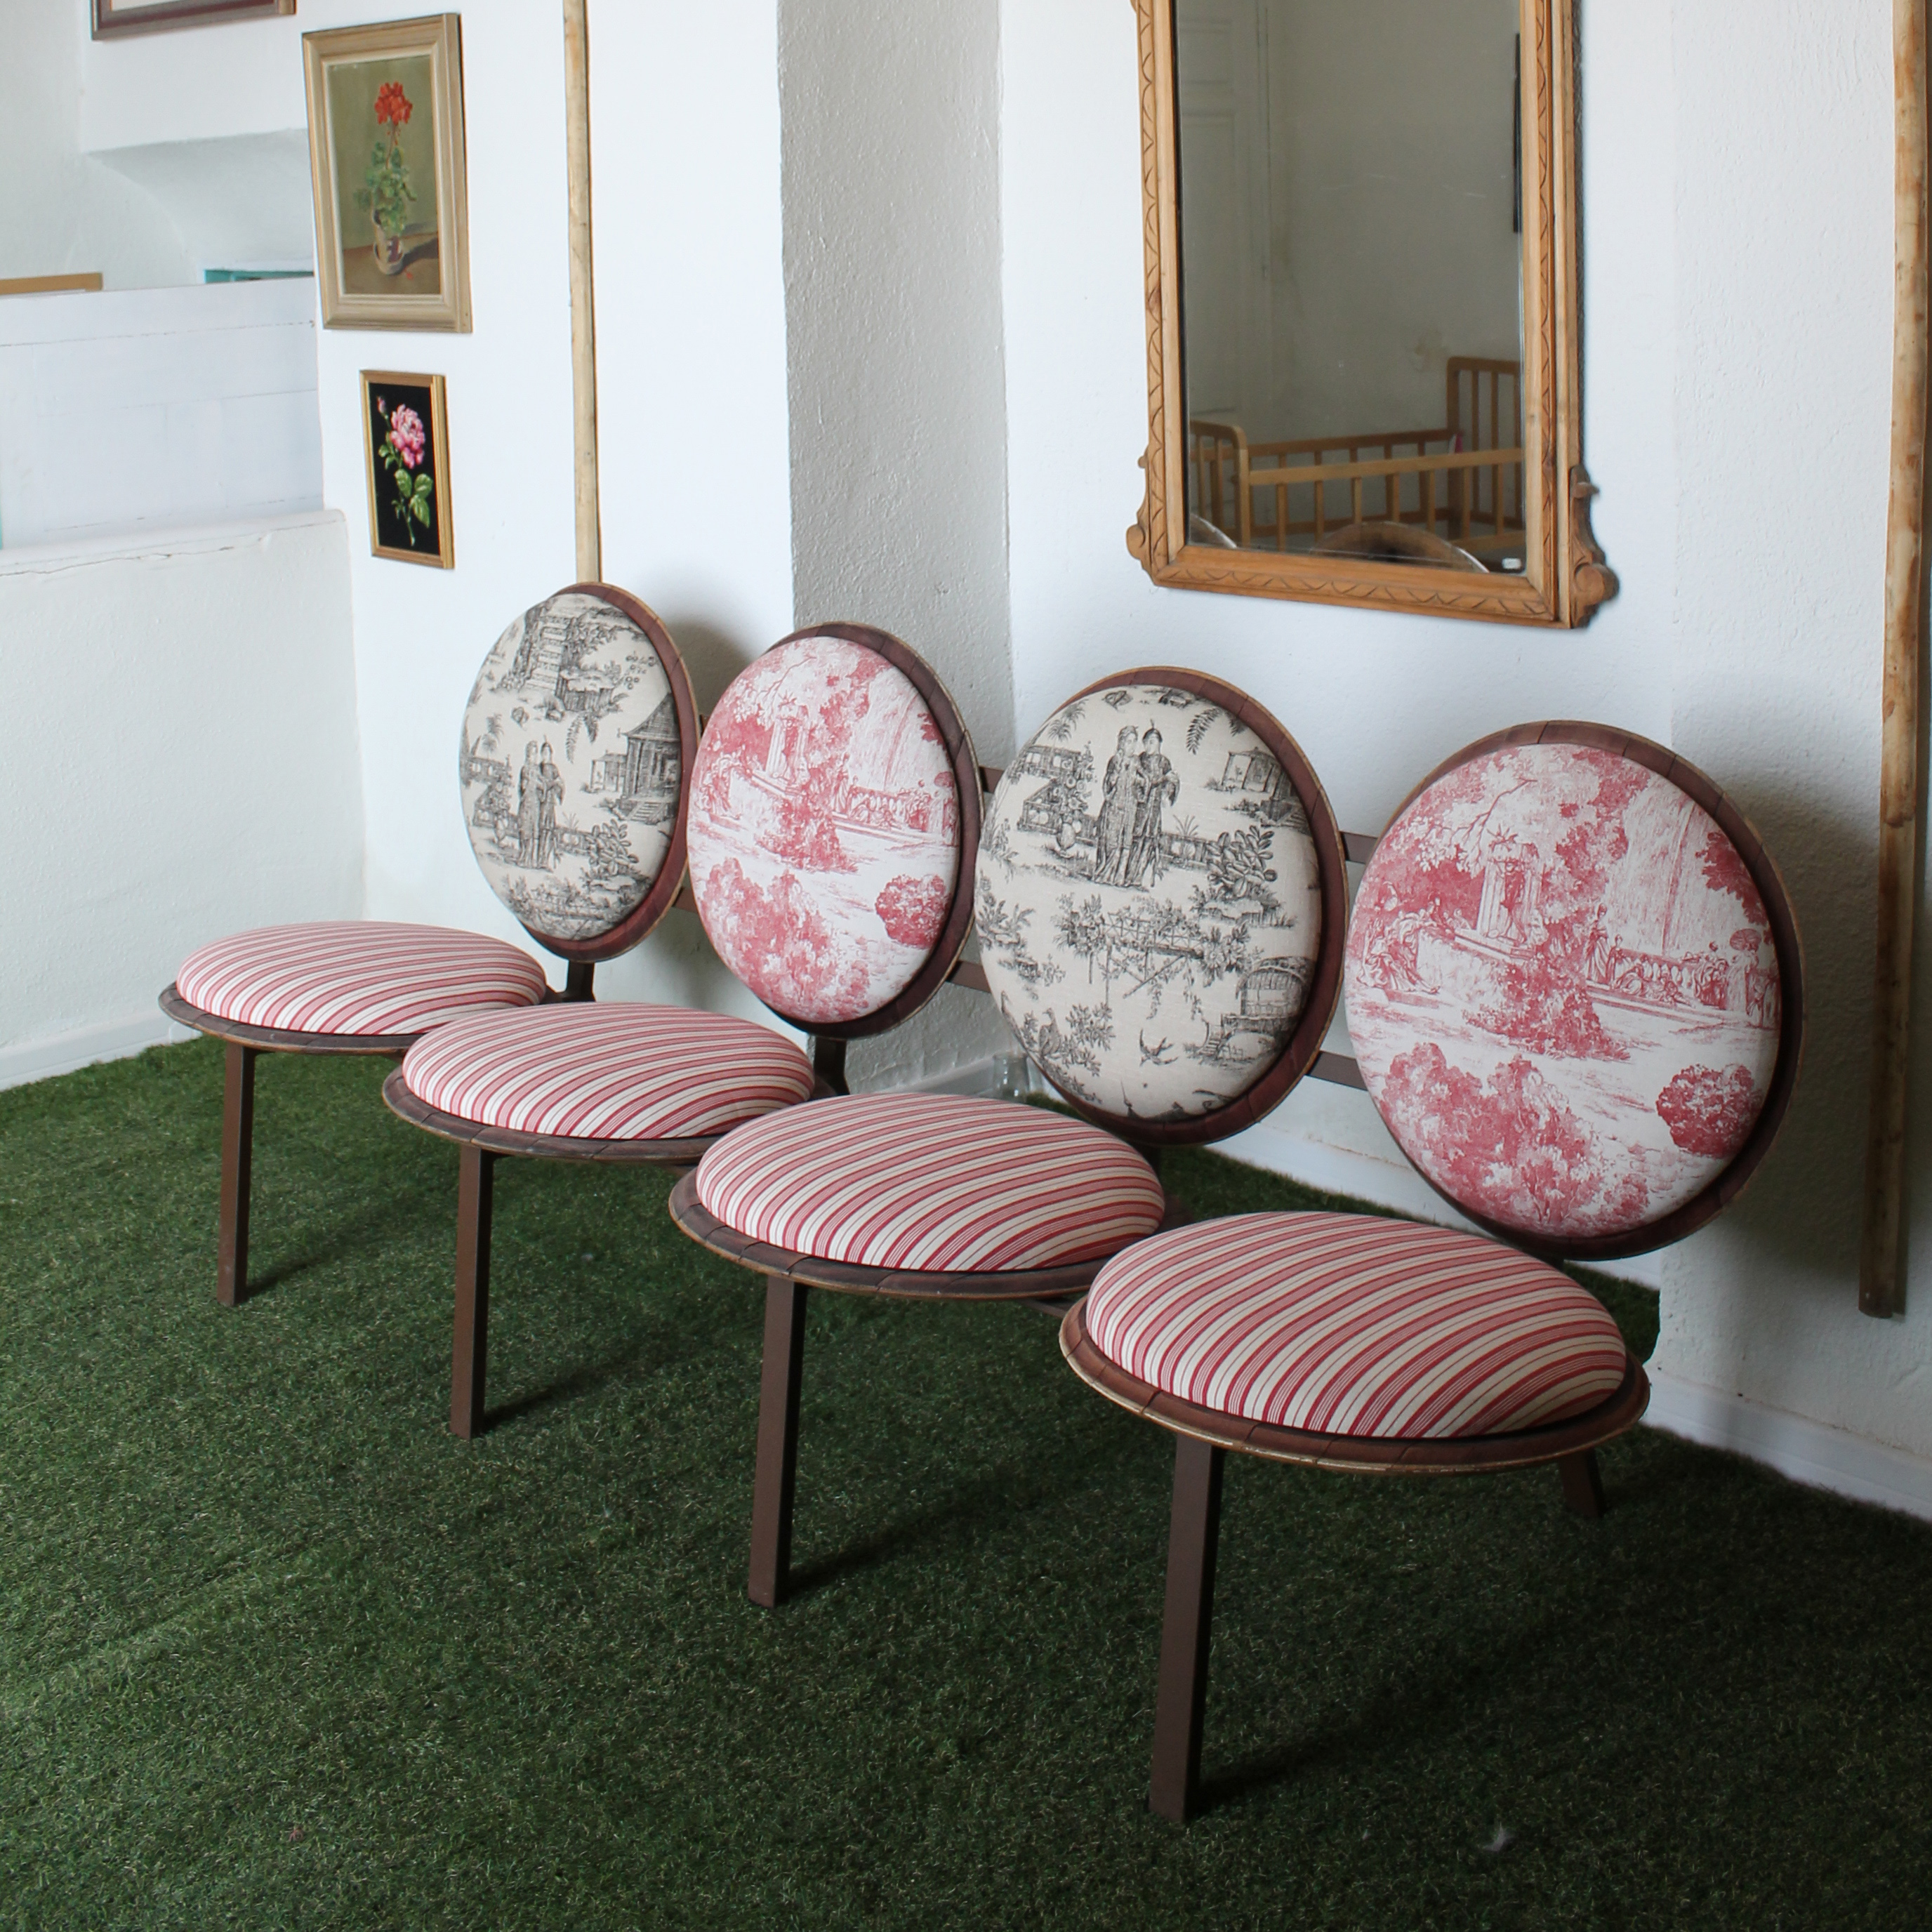 sillon sofa banca original asientos circulos redondos rara banco tapizado tapas barrica vino barriles